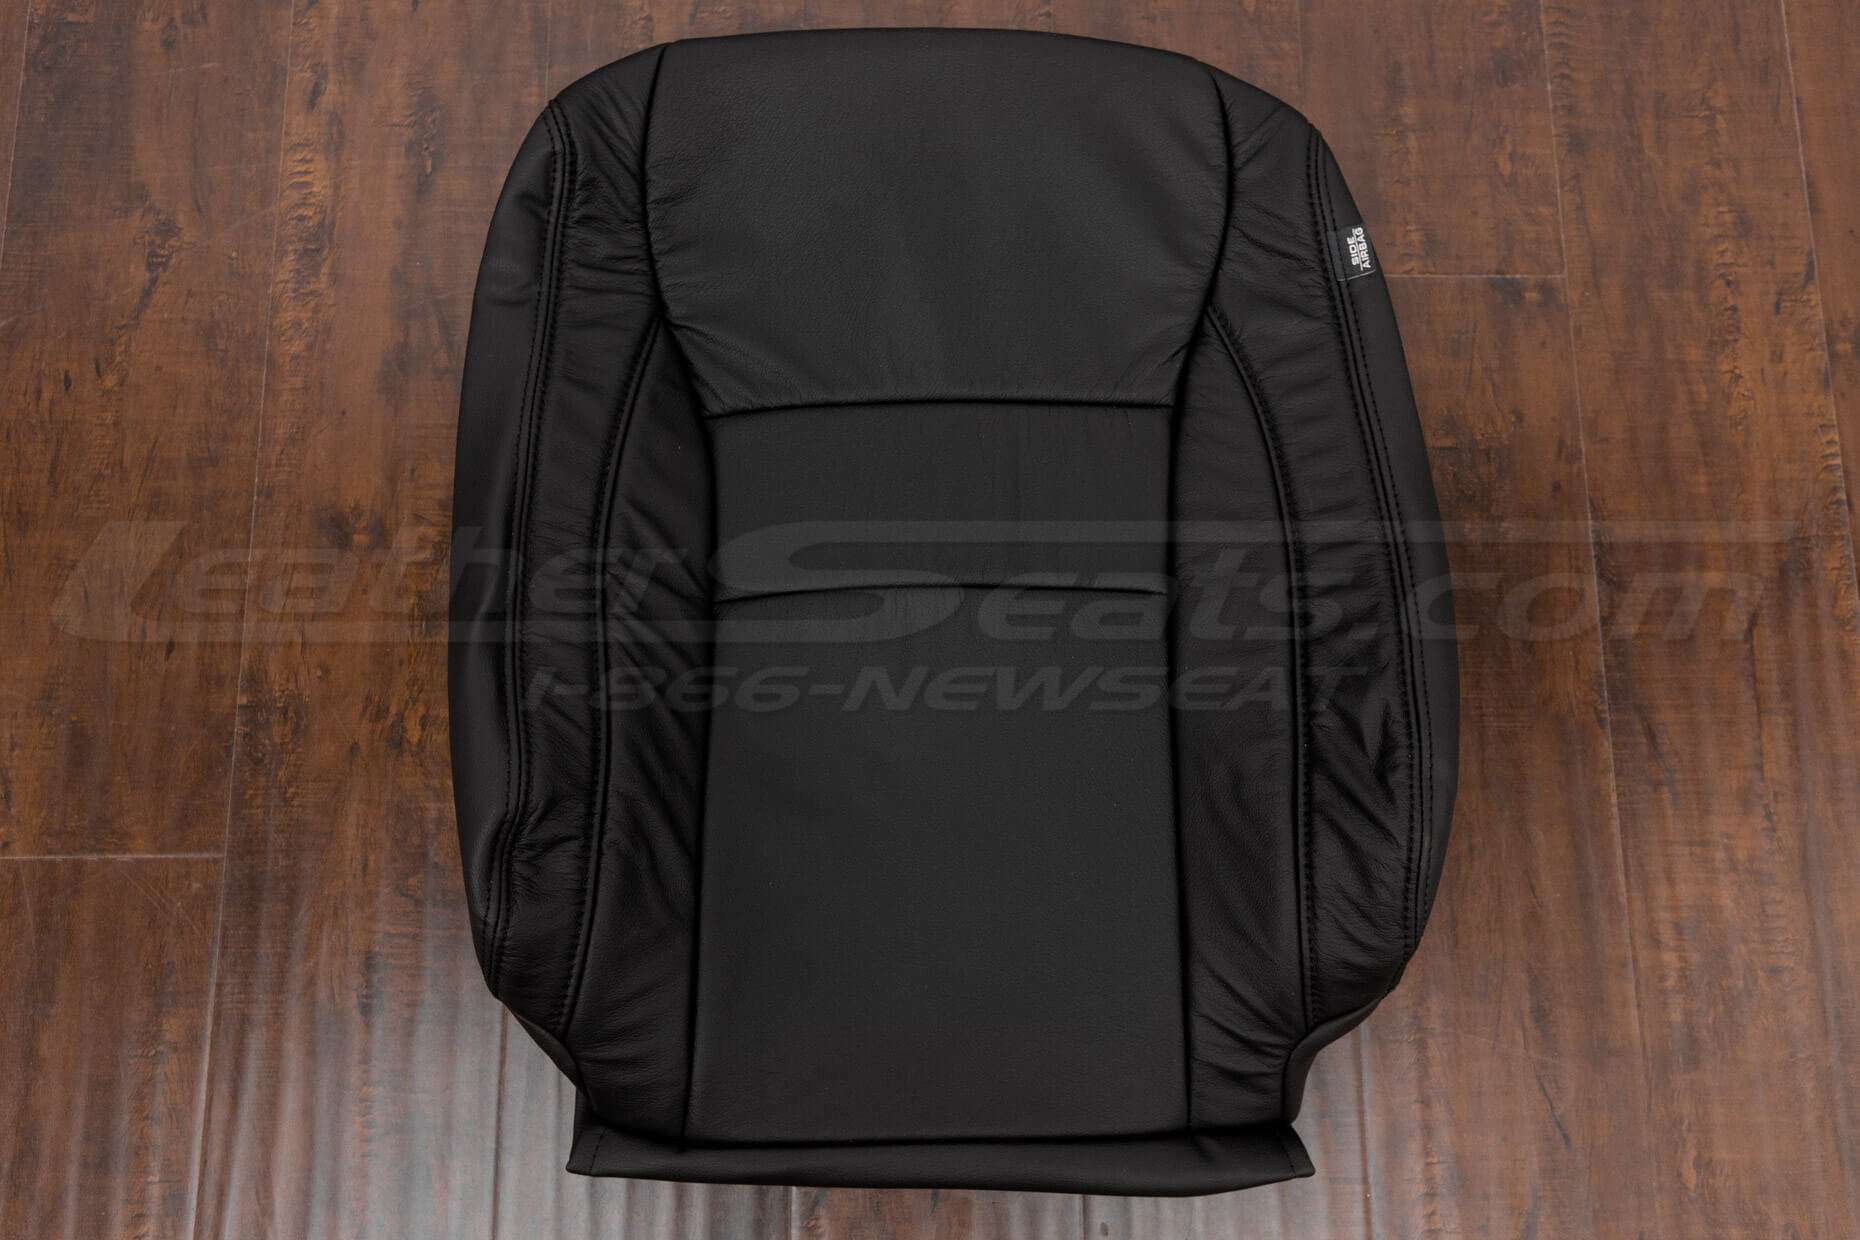 Honda Pilot front backrest upholstery in Black